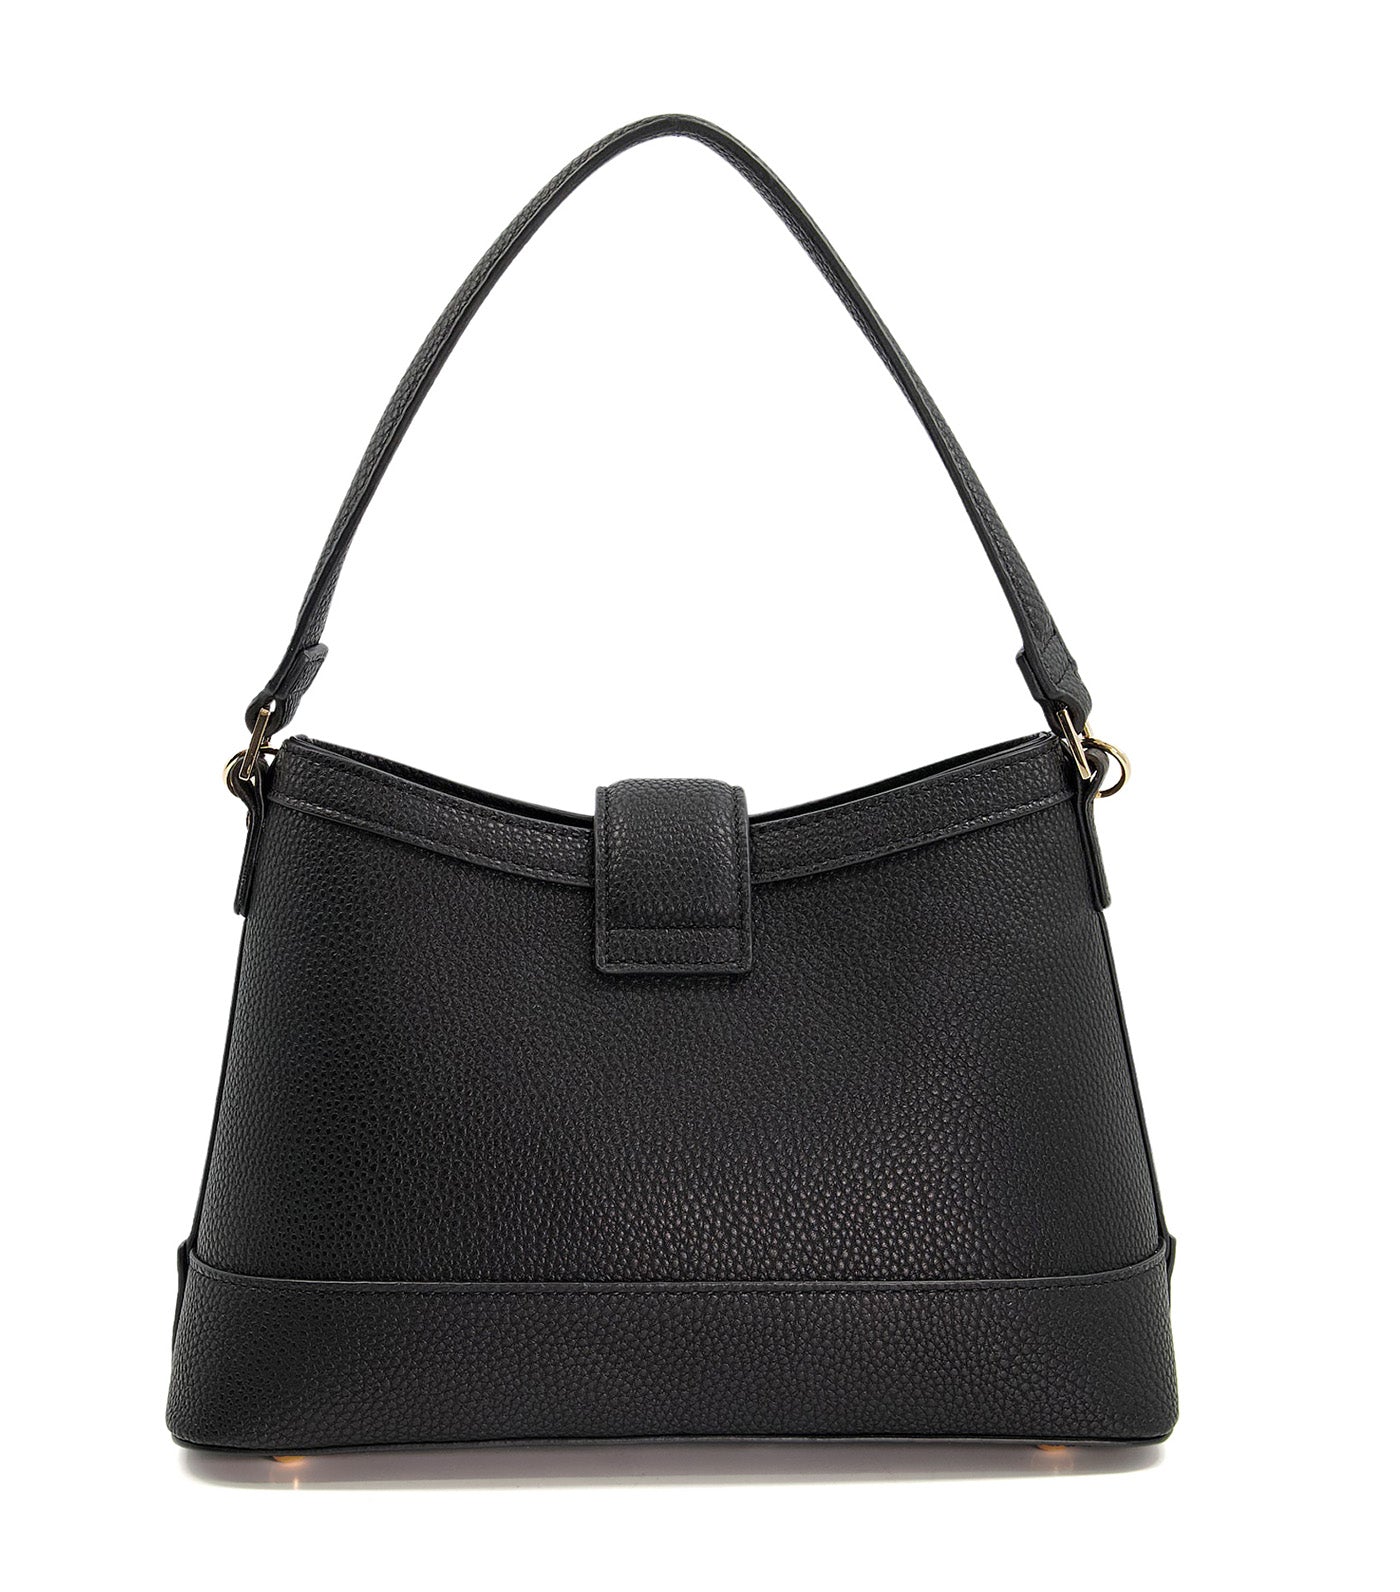 Desirable Grab Bag Black